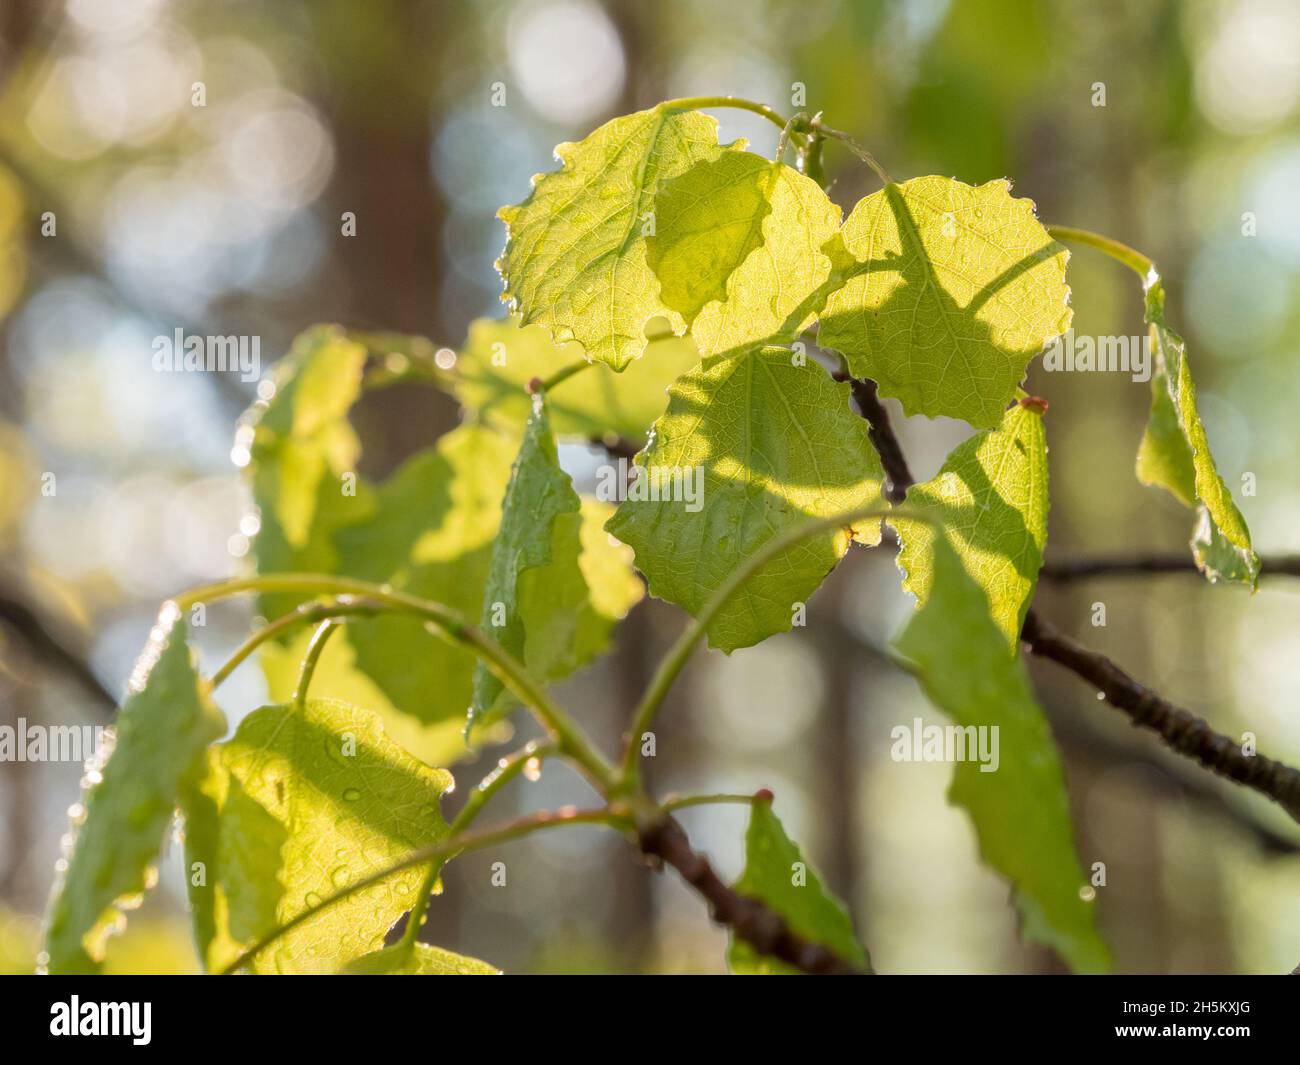 Wet leaves of European aspen in forest Stock Photo